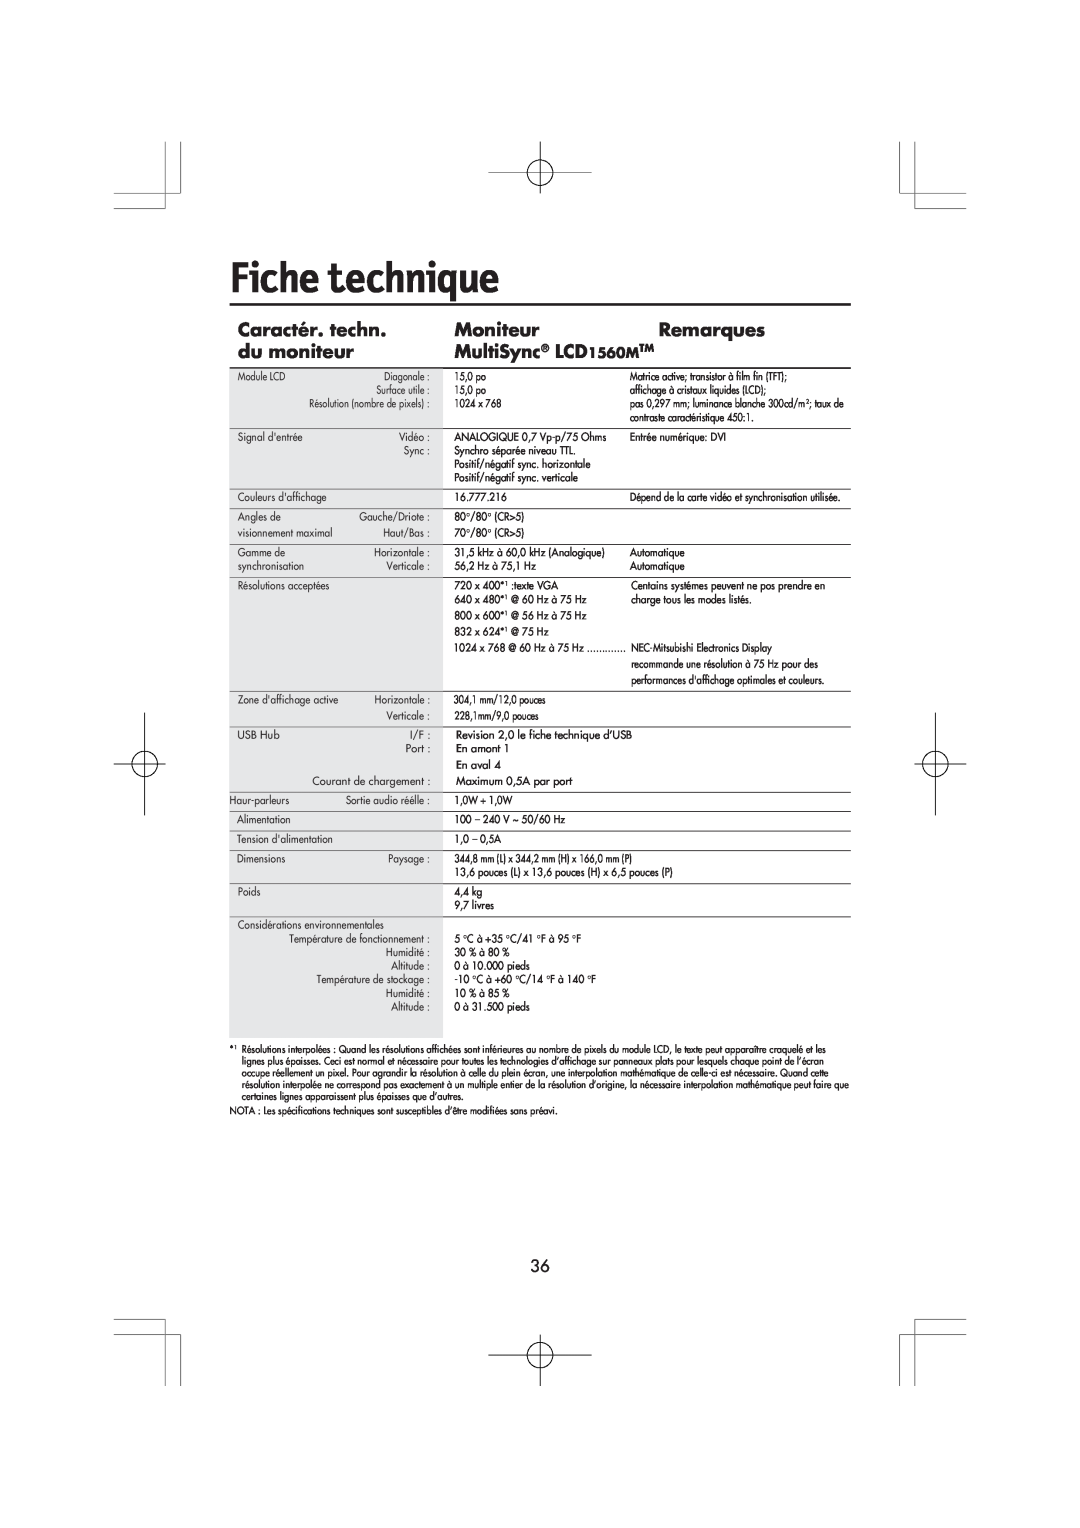 Mitsubishi Electronics manual Fiche technique, Caractér. techn, Moniteur, Remarques, du moniteur, MultiSync LCD1560MTM 